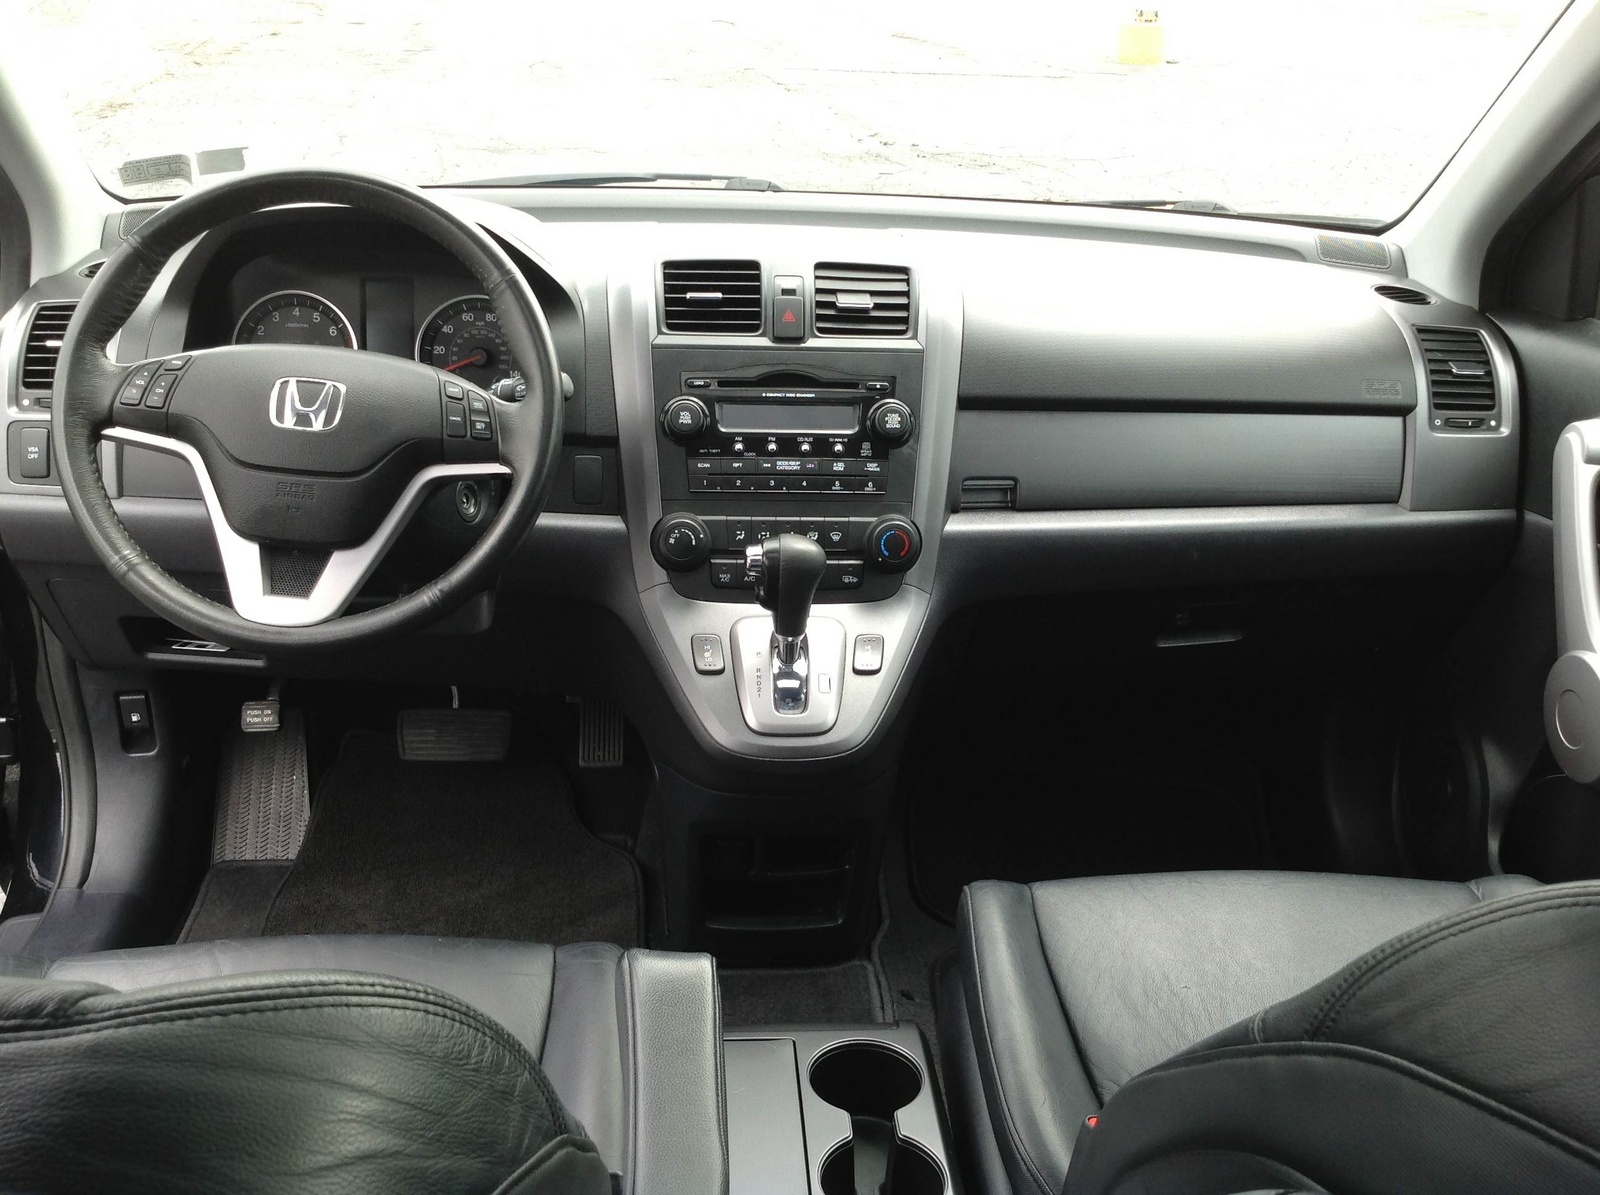 2007 Honda CR-V - Pictures - CarGurus